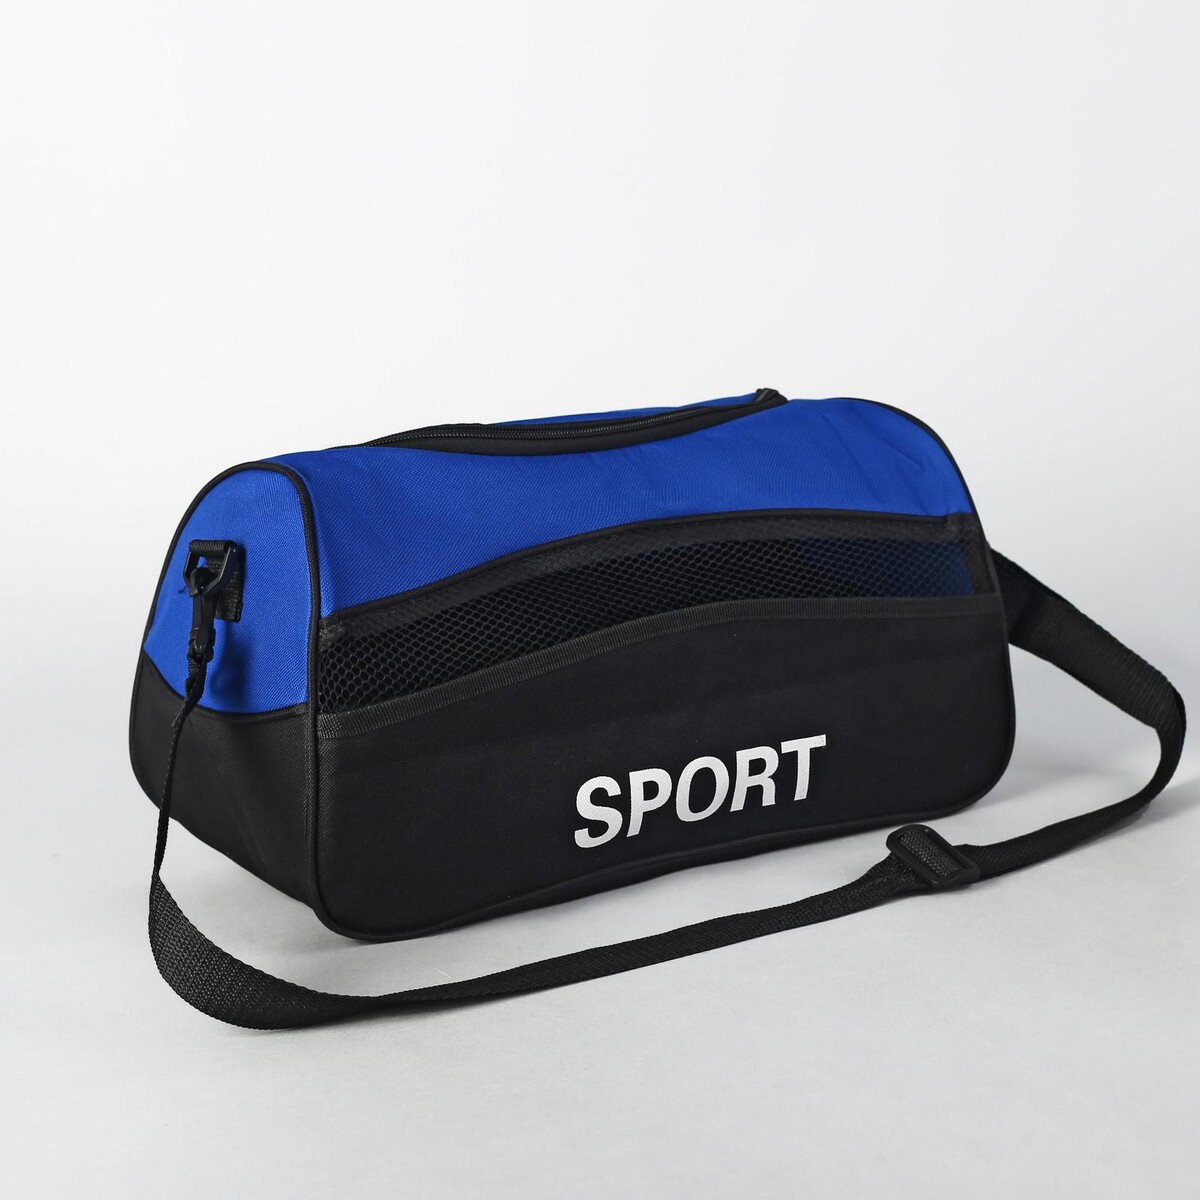 Сумка спортивная на молнии, наружный карман, длинный ремень, цвет синий/черный сумка спорт фитнес 37 19 19 отд на молнии бок сетка рег ремень